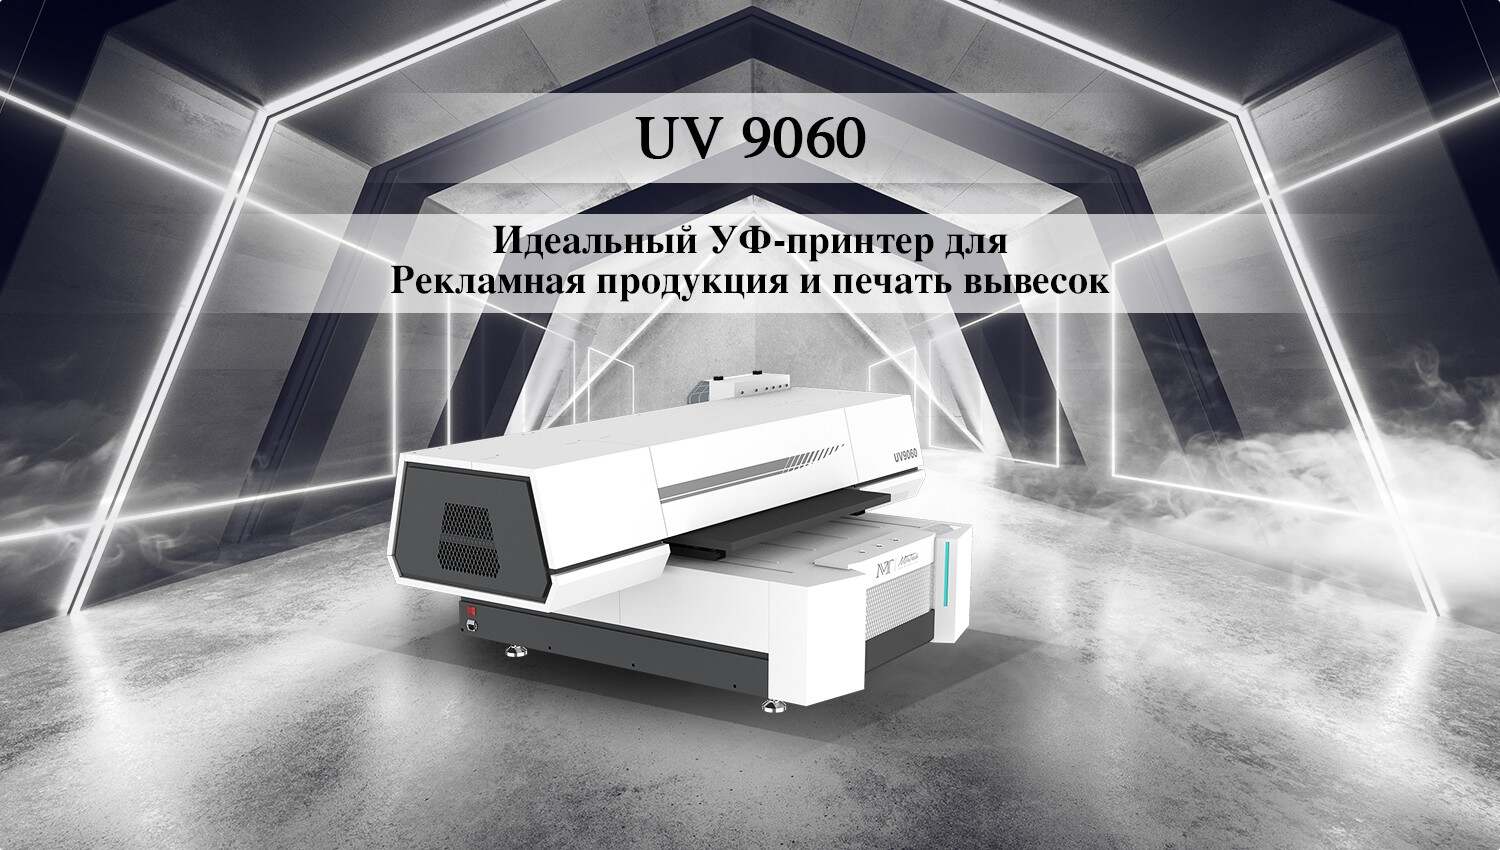 UV9060-Russian_01